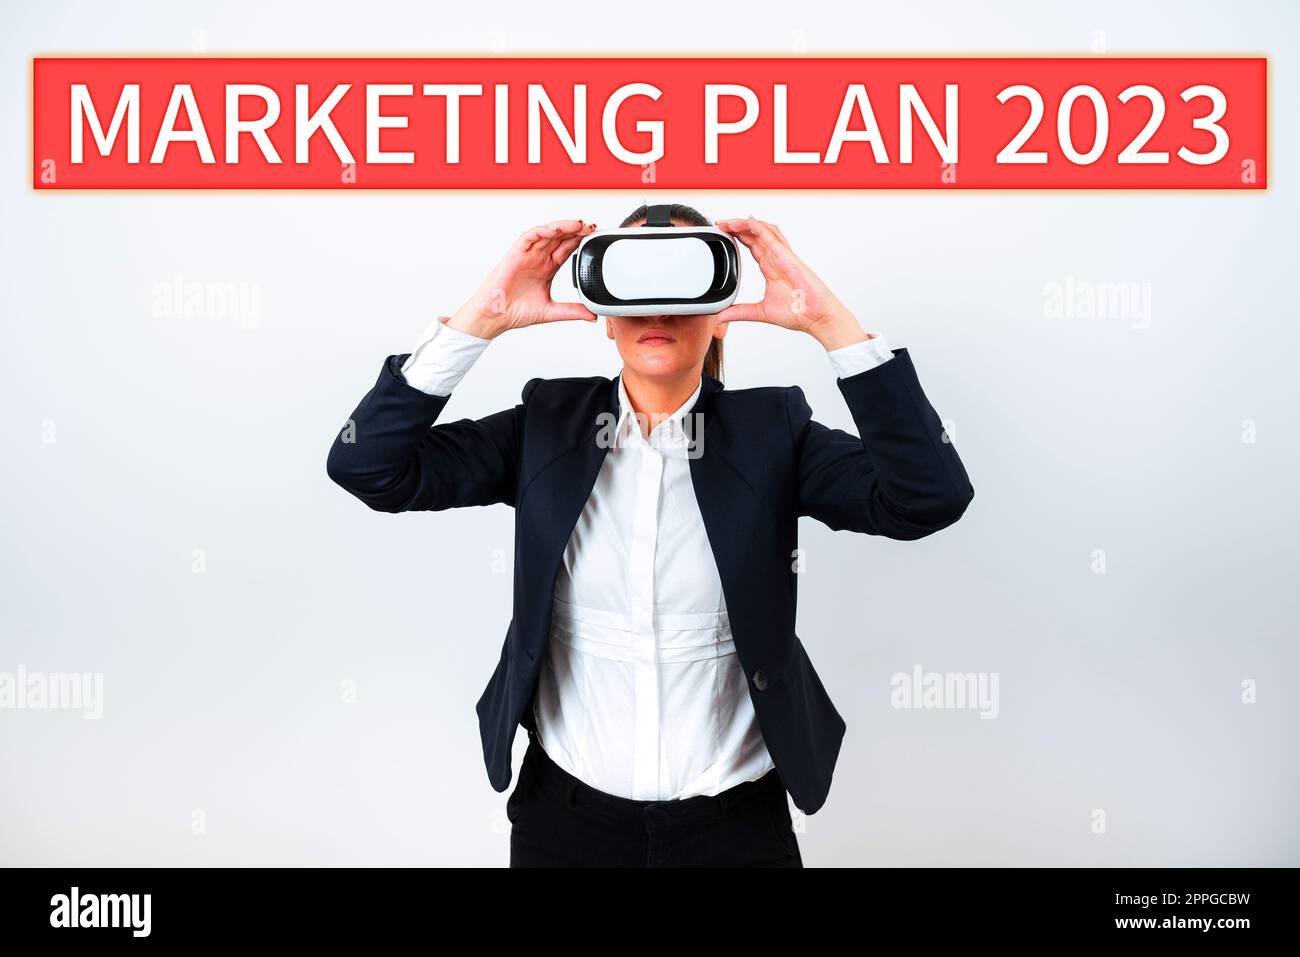 Affiche présentant le plan de marketing 2023. Calendrier des concepts commerciaux définissant la manière de vendre la marque l'année prochaine Banque D'Images